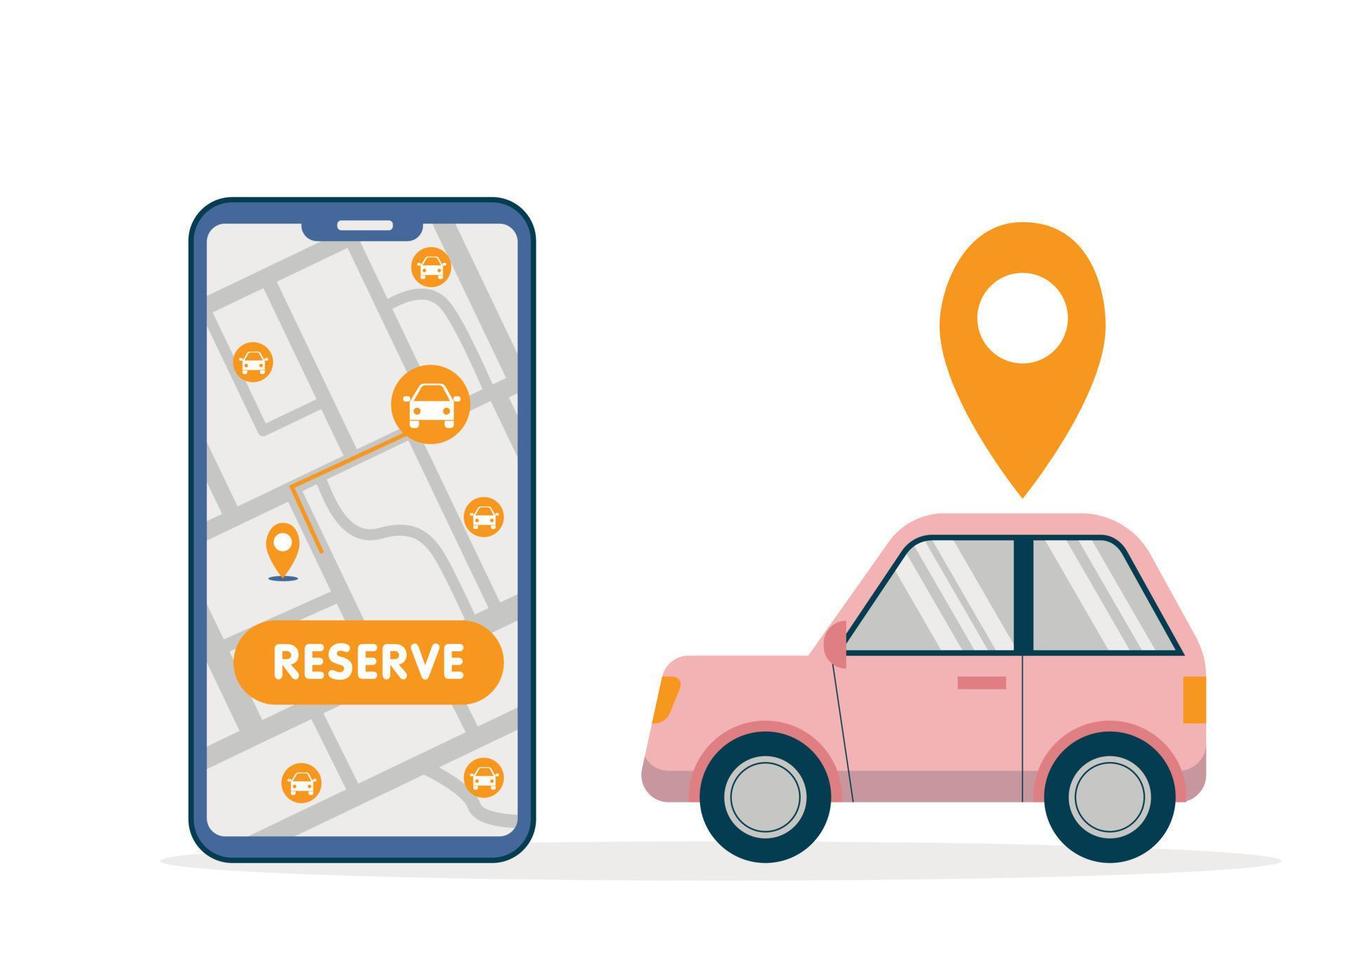 ilustración simple de uso compartido de automóviles con un gran teléfono inteligente con búsqueda gratuita de automóviles y mapa de reserva y automóvil rosa en estilo plano vector